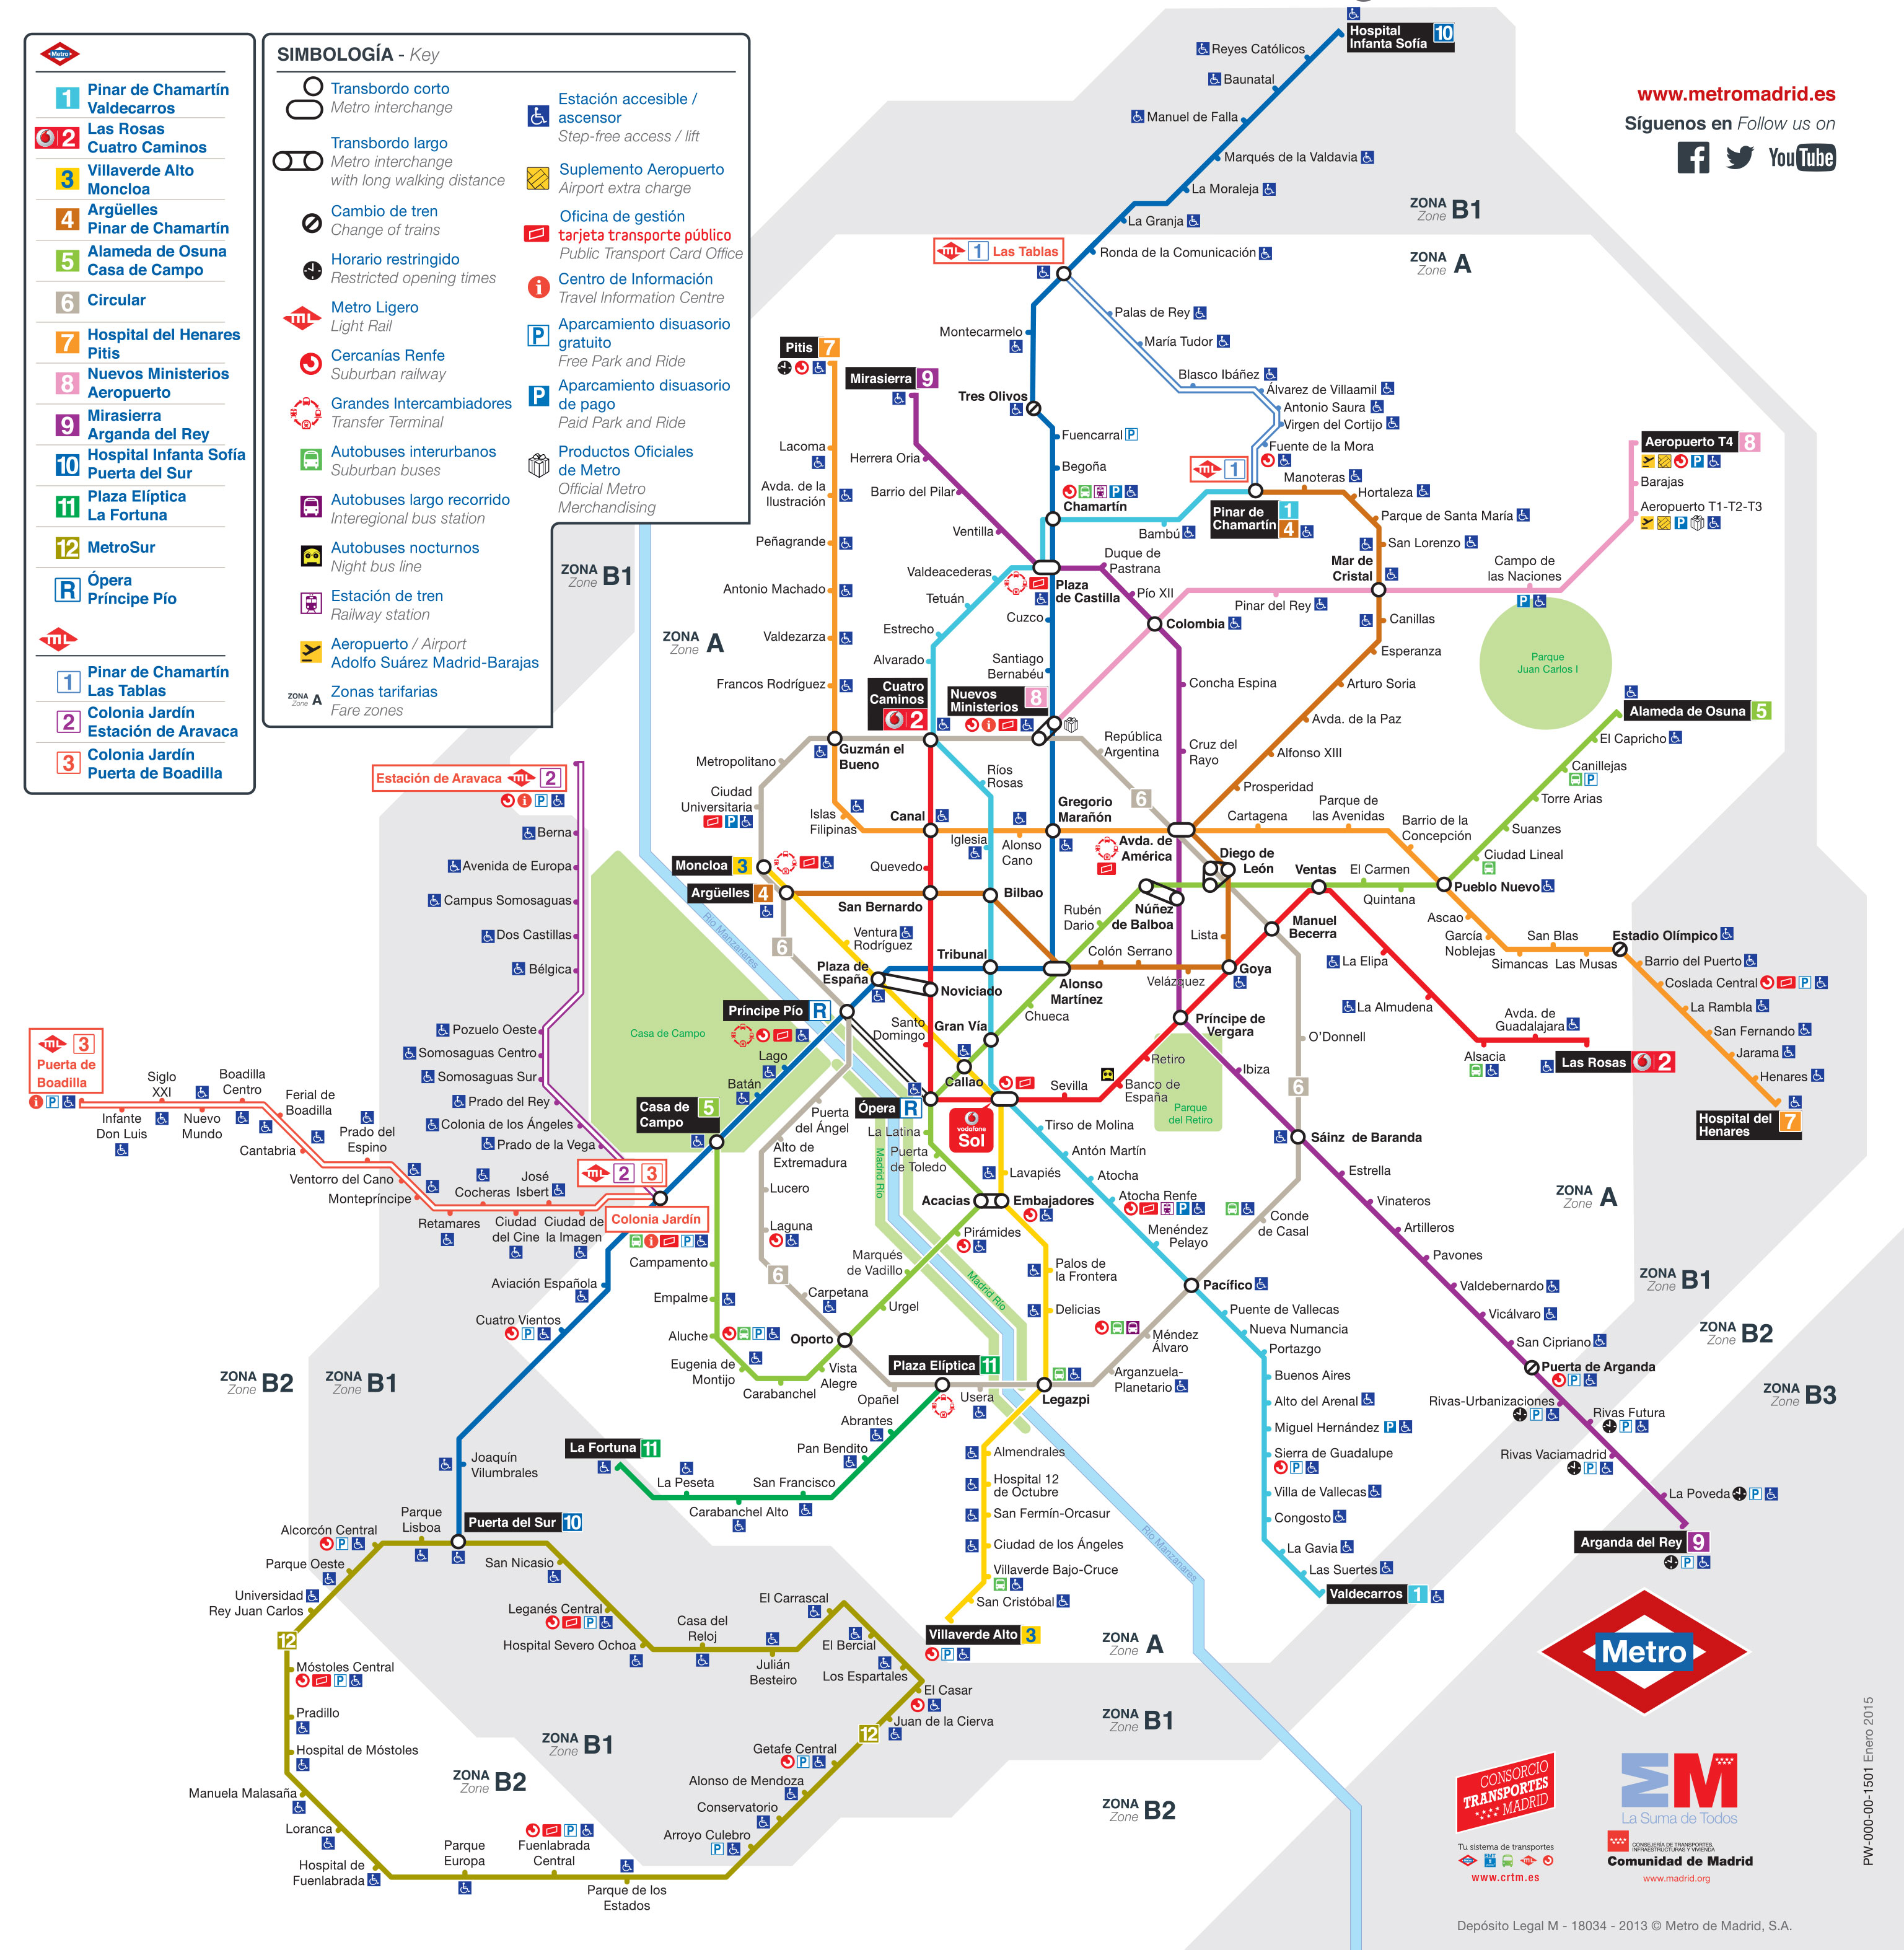 Mapa y plano de metro de Madrid : estaciones y lineas